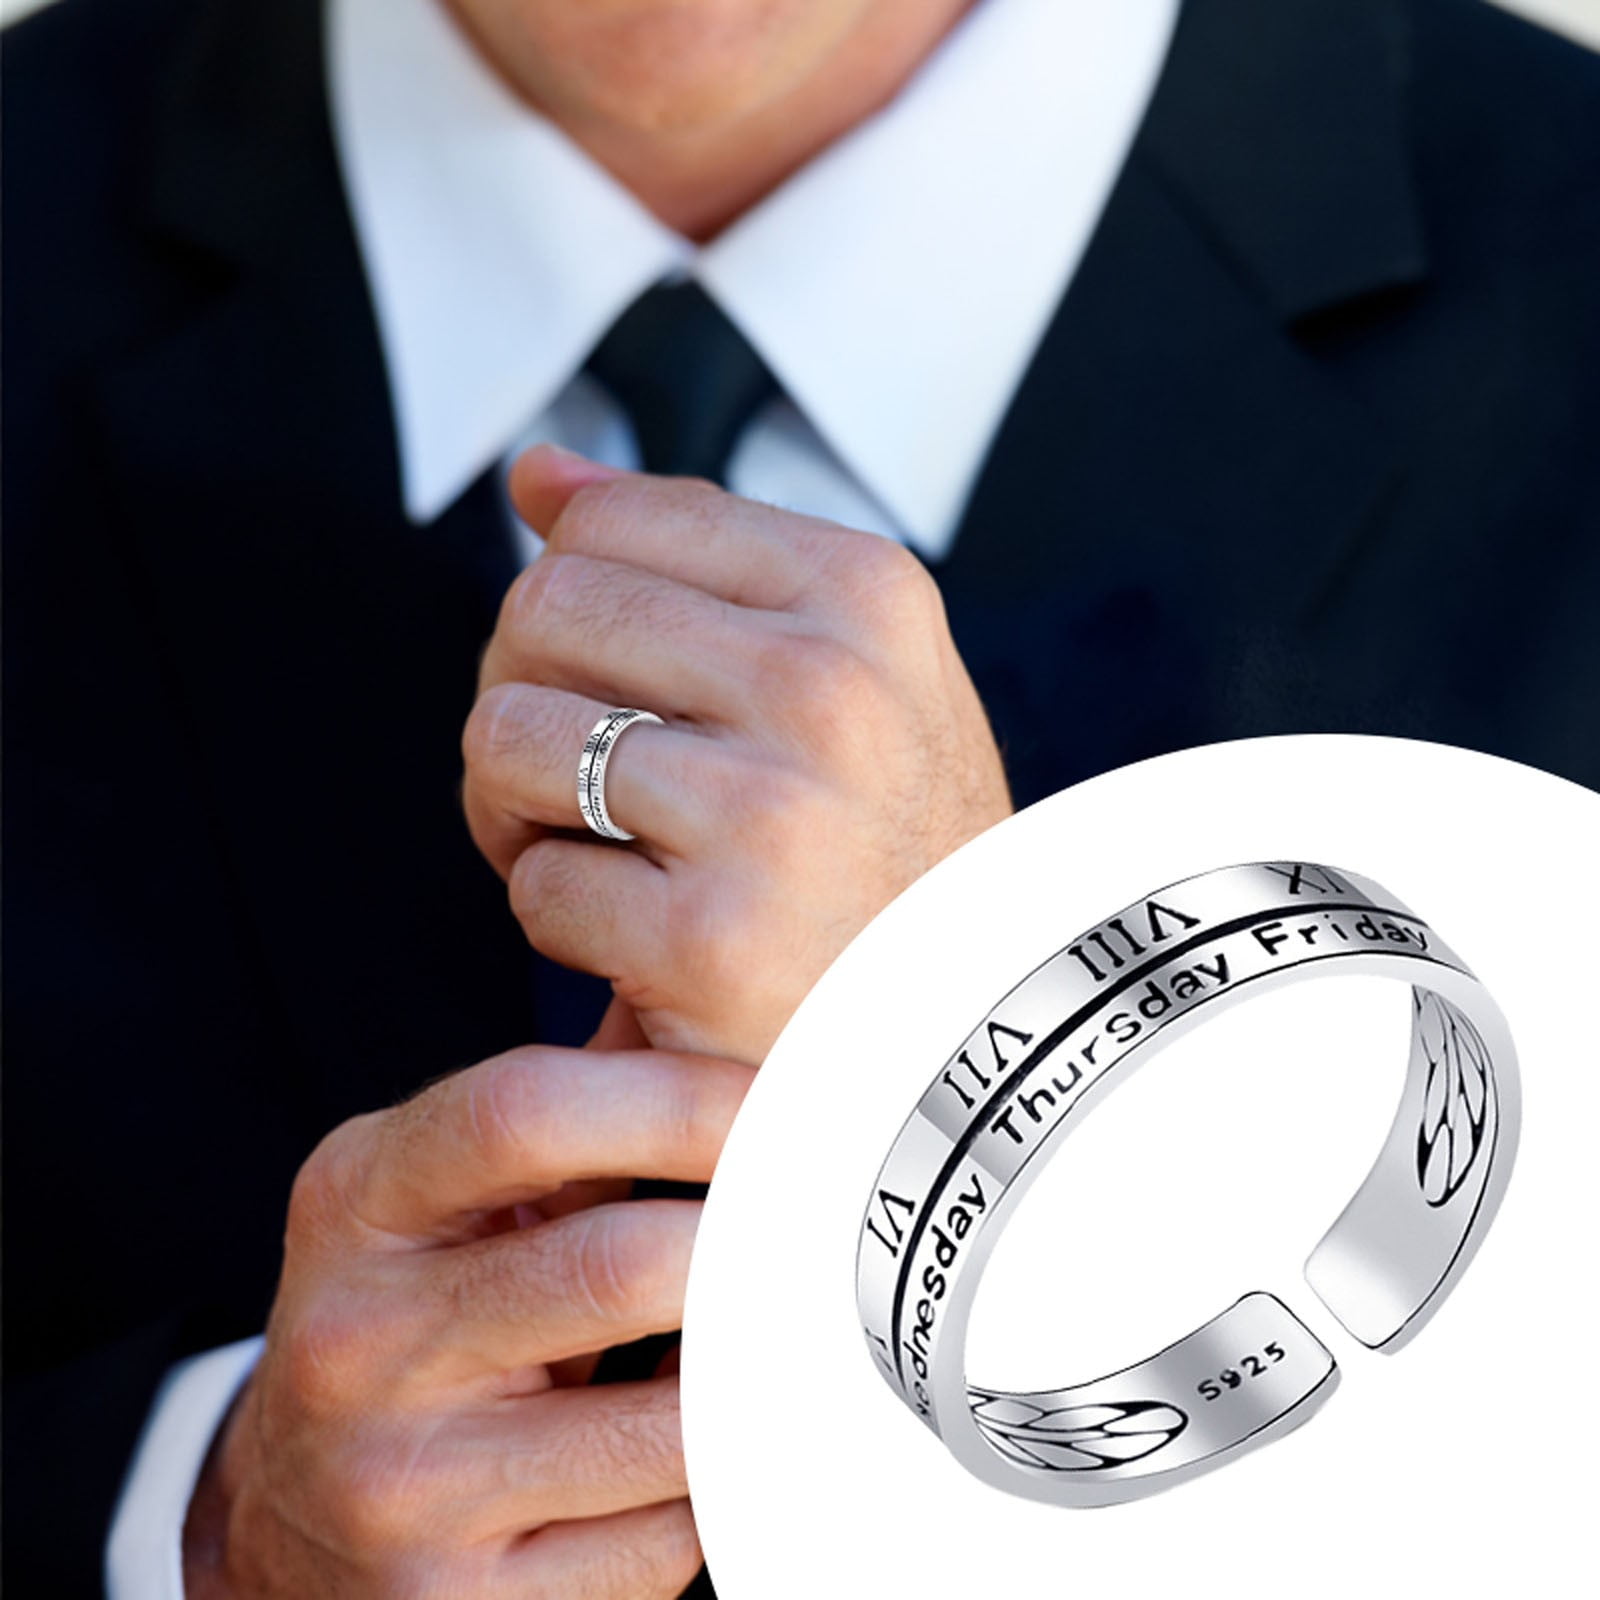 keusn men's fashion ring creative gift opening ring girls ring senior index finger  ring adjustable size ring daily wear - Walmart.com